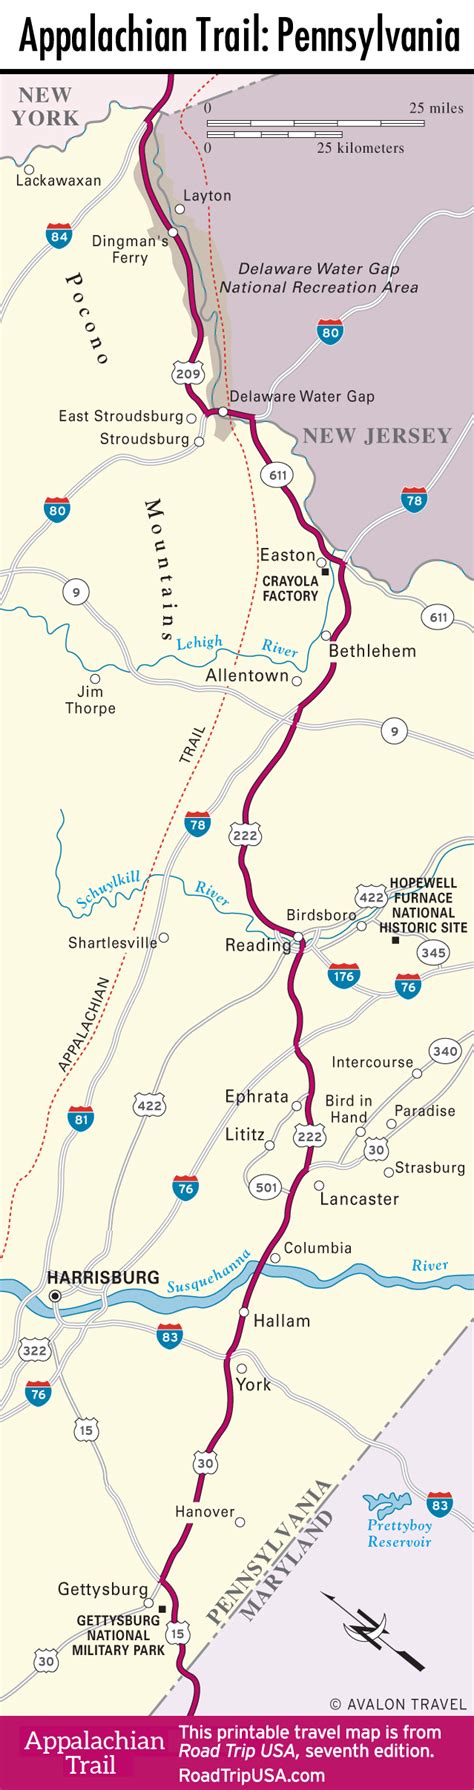 The Appalachian Trail Through Pennsylvania Road Trip Usa